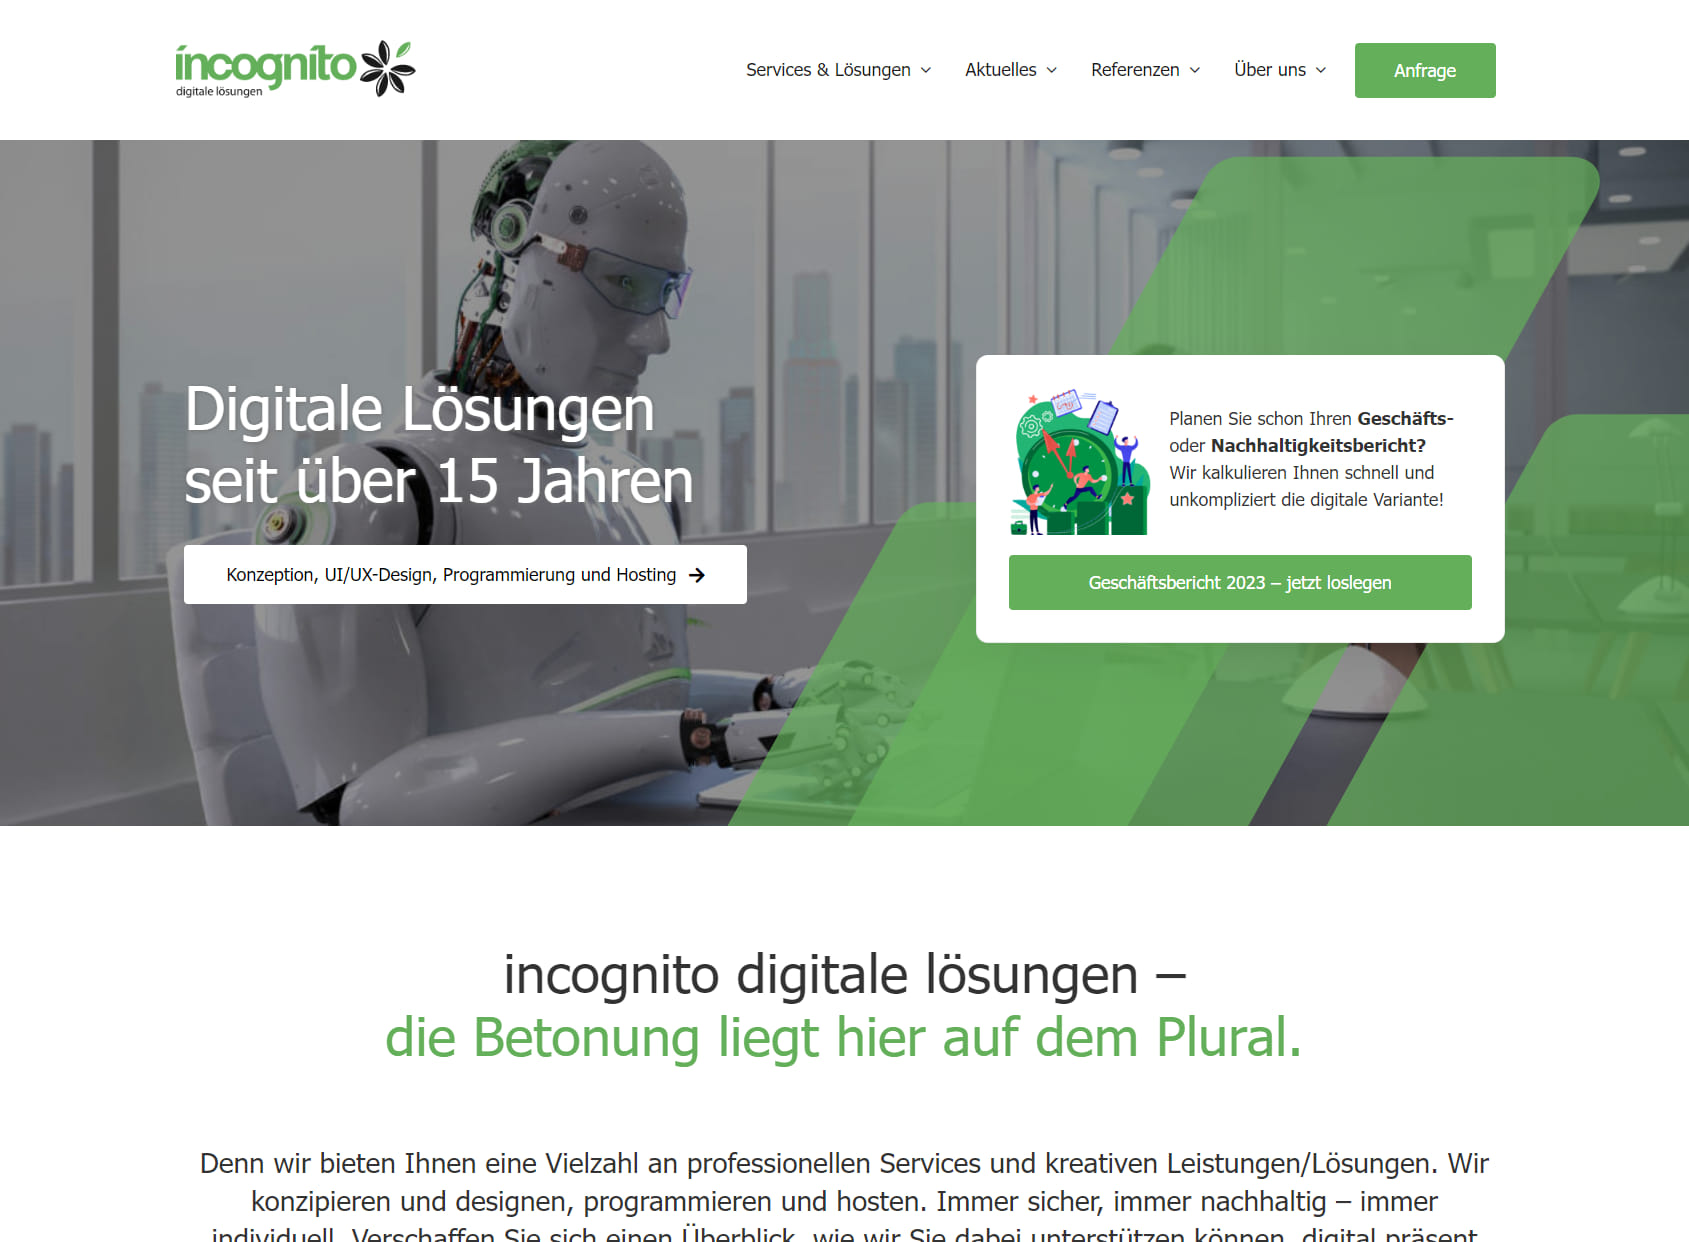 incognito GmbH & Co. KG